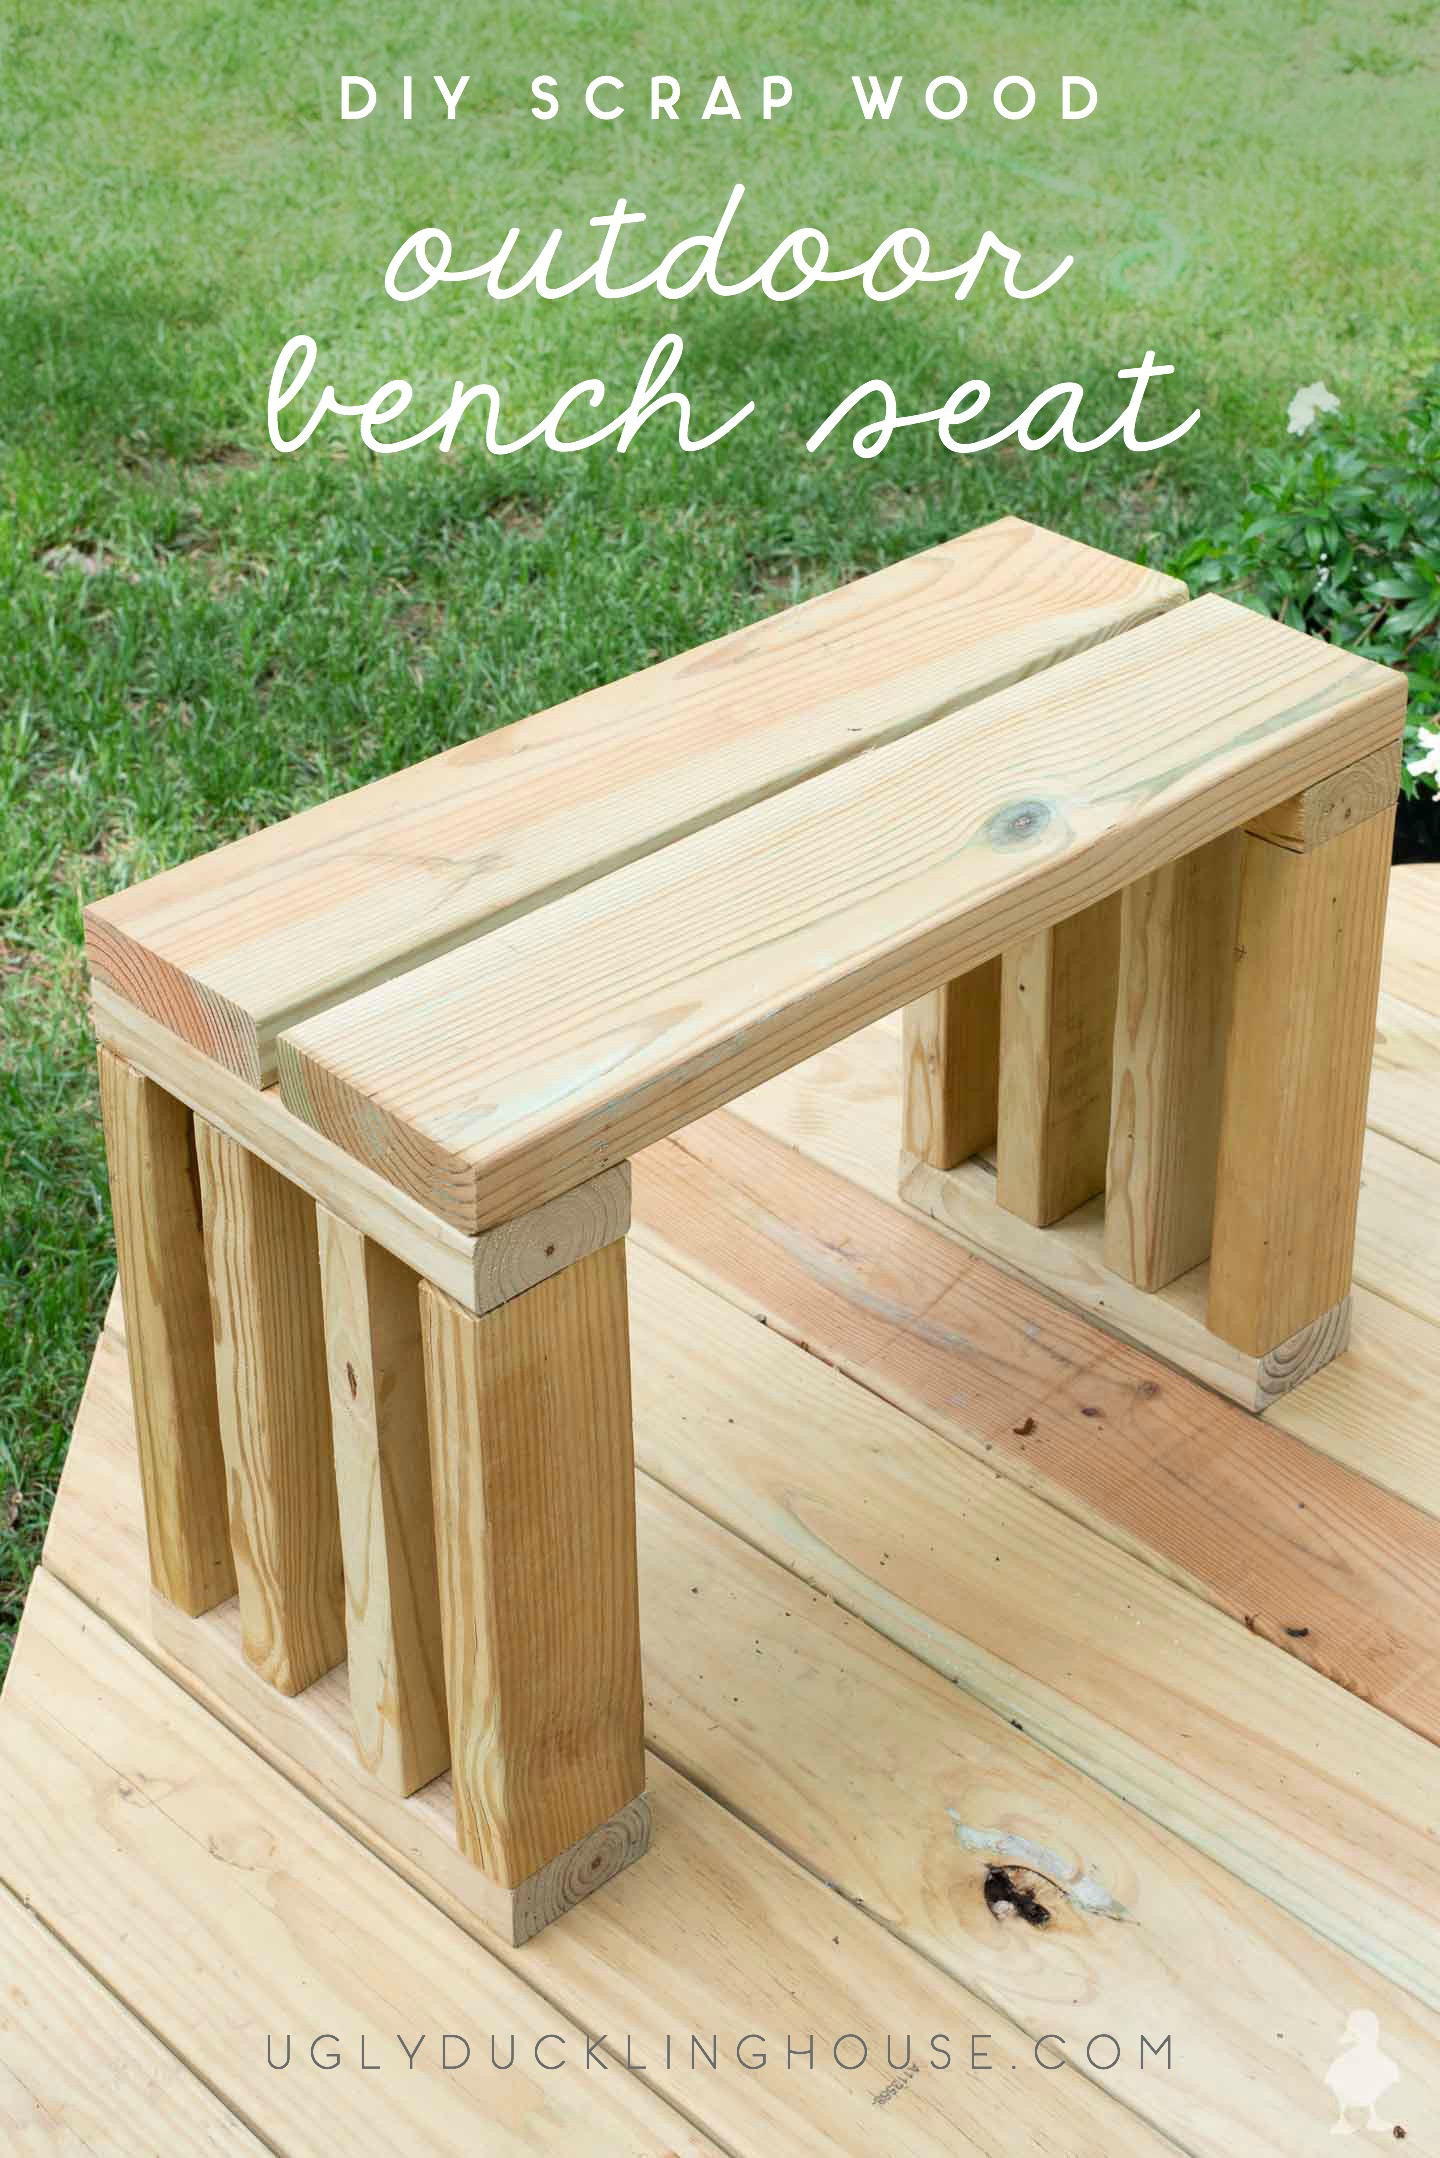 DIY Outdoor Wooden Benches
 Scrap Wood Outdoor Bench Seat